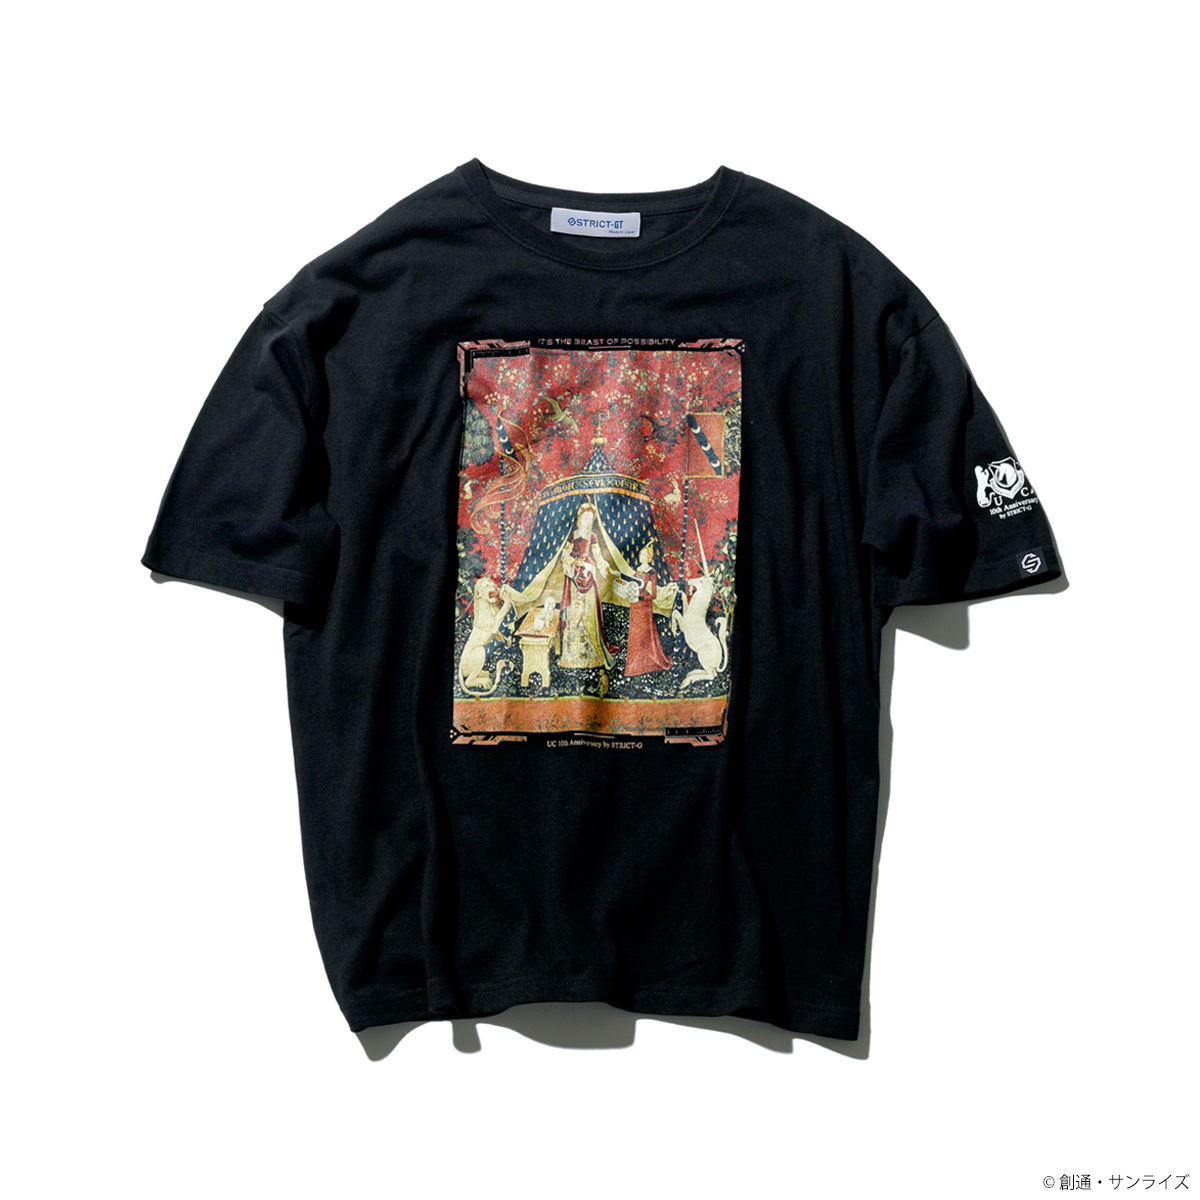 STRICT-G ガンダムユニコーン 10周年 アニバーサリー Tシャツ UC